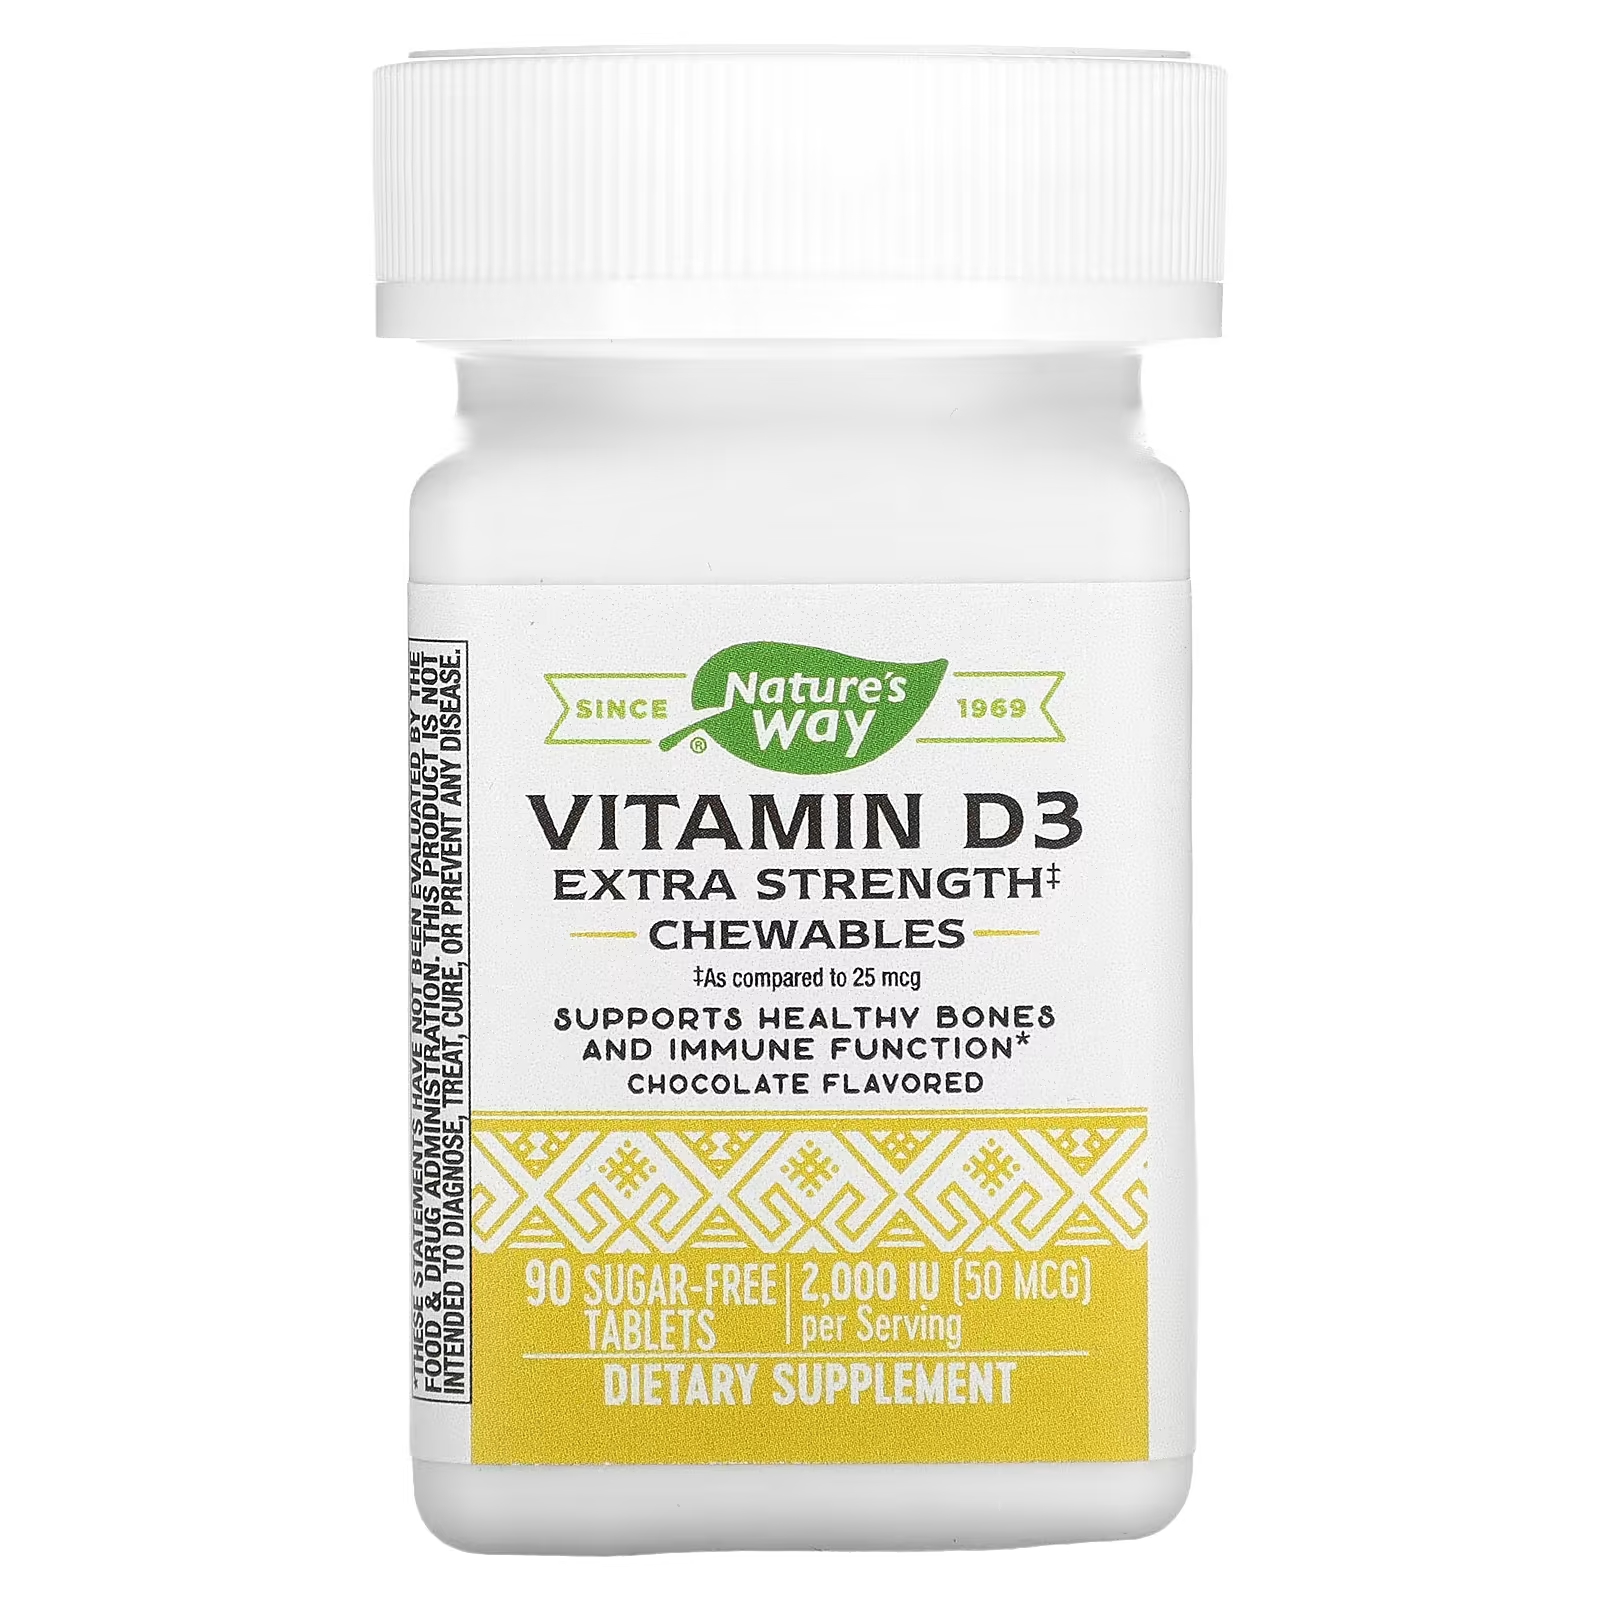 Витамин D3 повышенной прочности Nature's Way в шоколаде, 90 таблеток бады для пищеварения изжогофф био таблетки жевательные со вкусом мяты